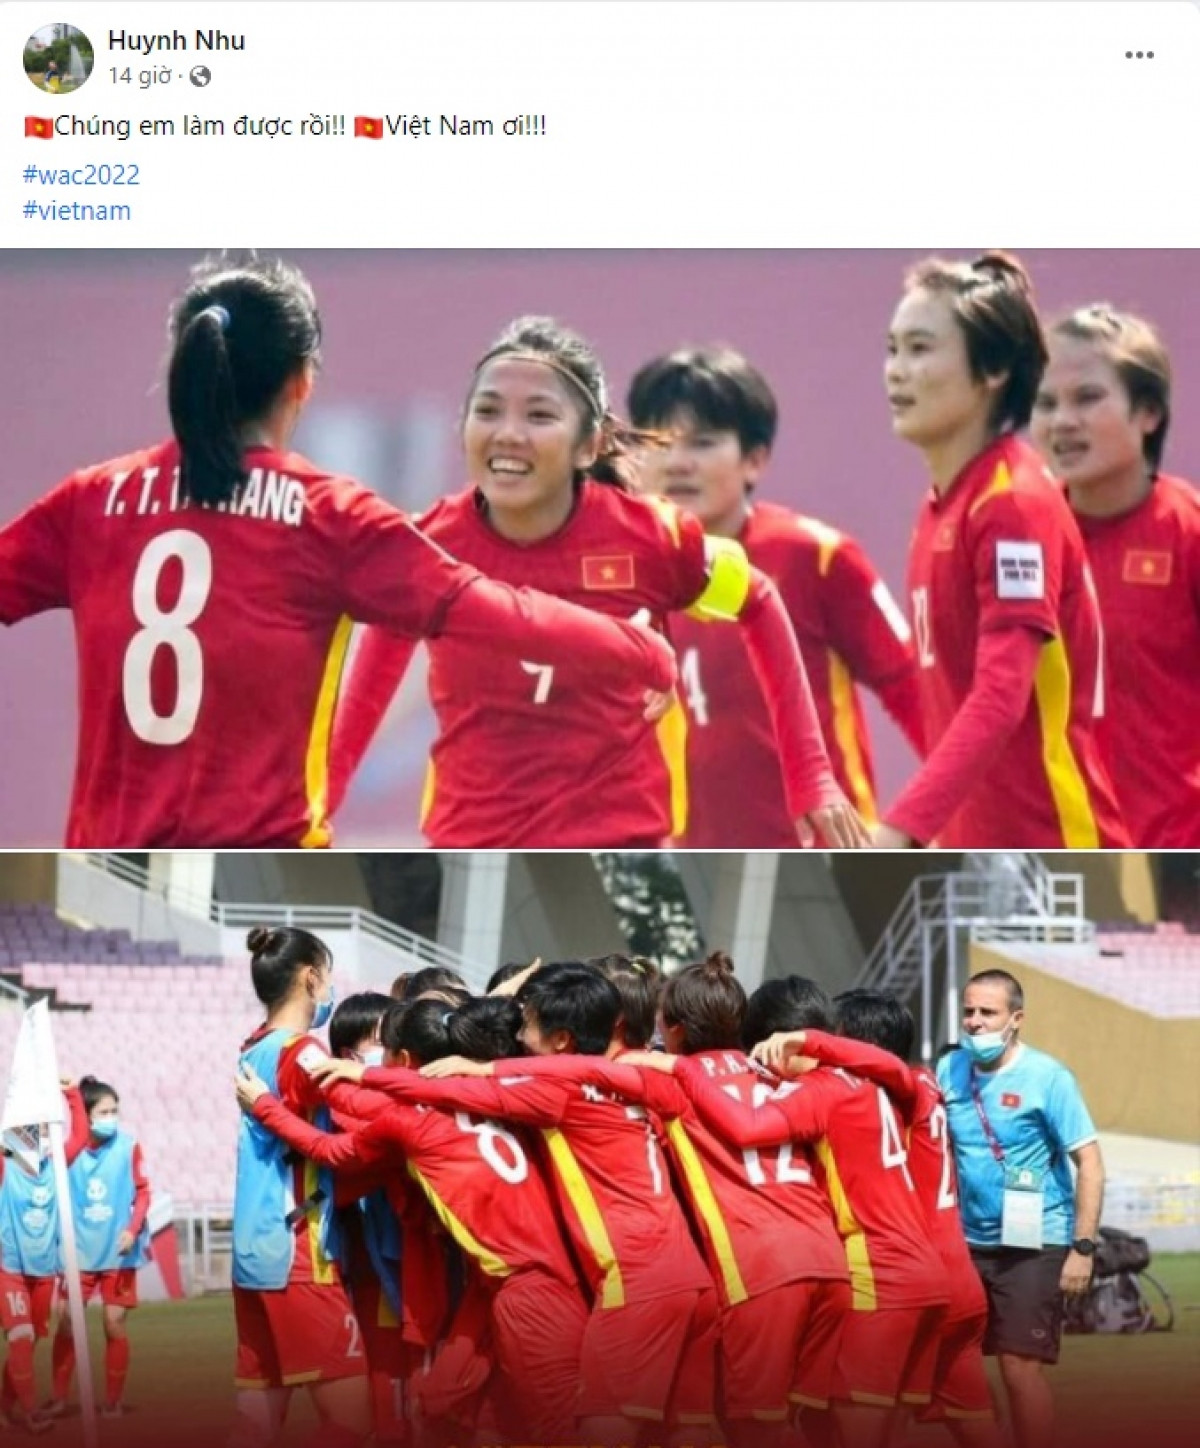 Tiền đạo Huỳnh Như là thủ lĩnh của ĐT nữ Việt Nam trên hành trình giành vé tới VCK World Cup nữ 2023.